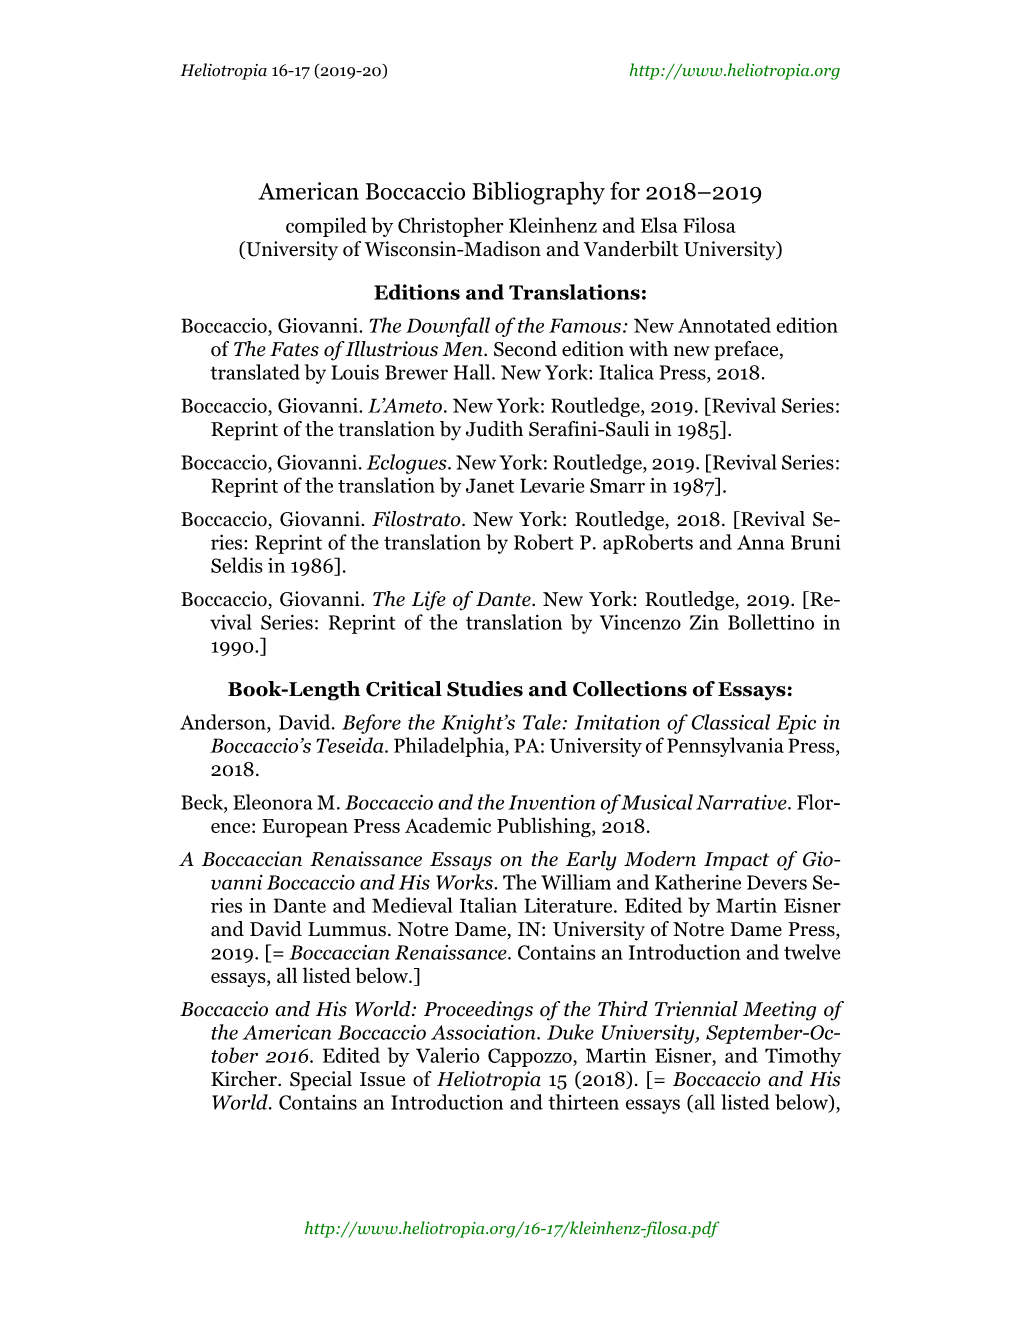 American Boccaccio Bibliography for 2018-2019